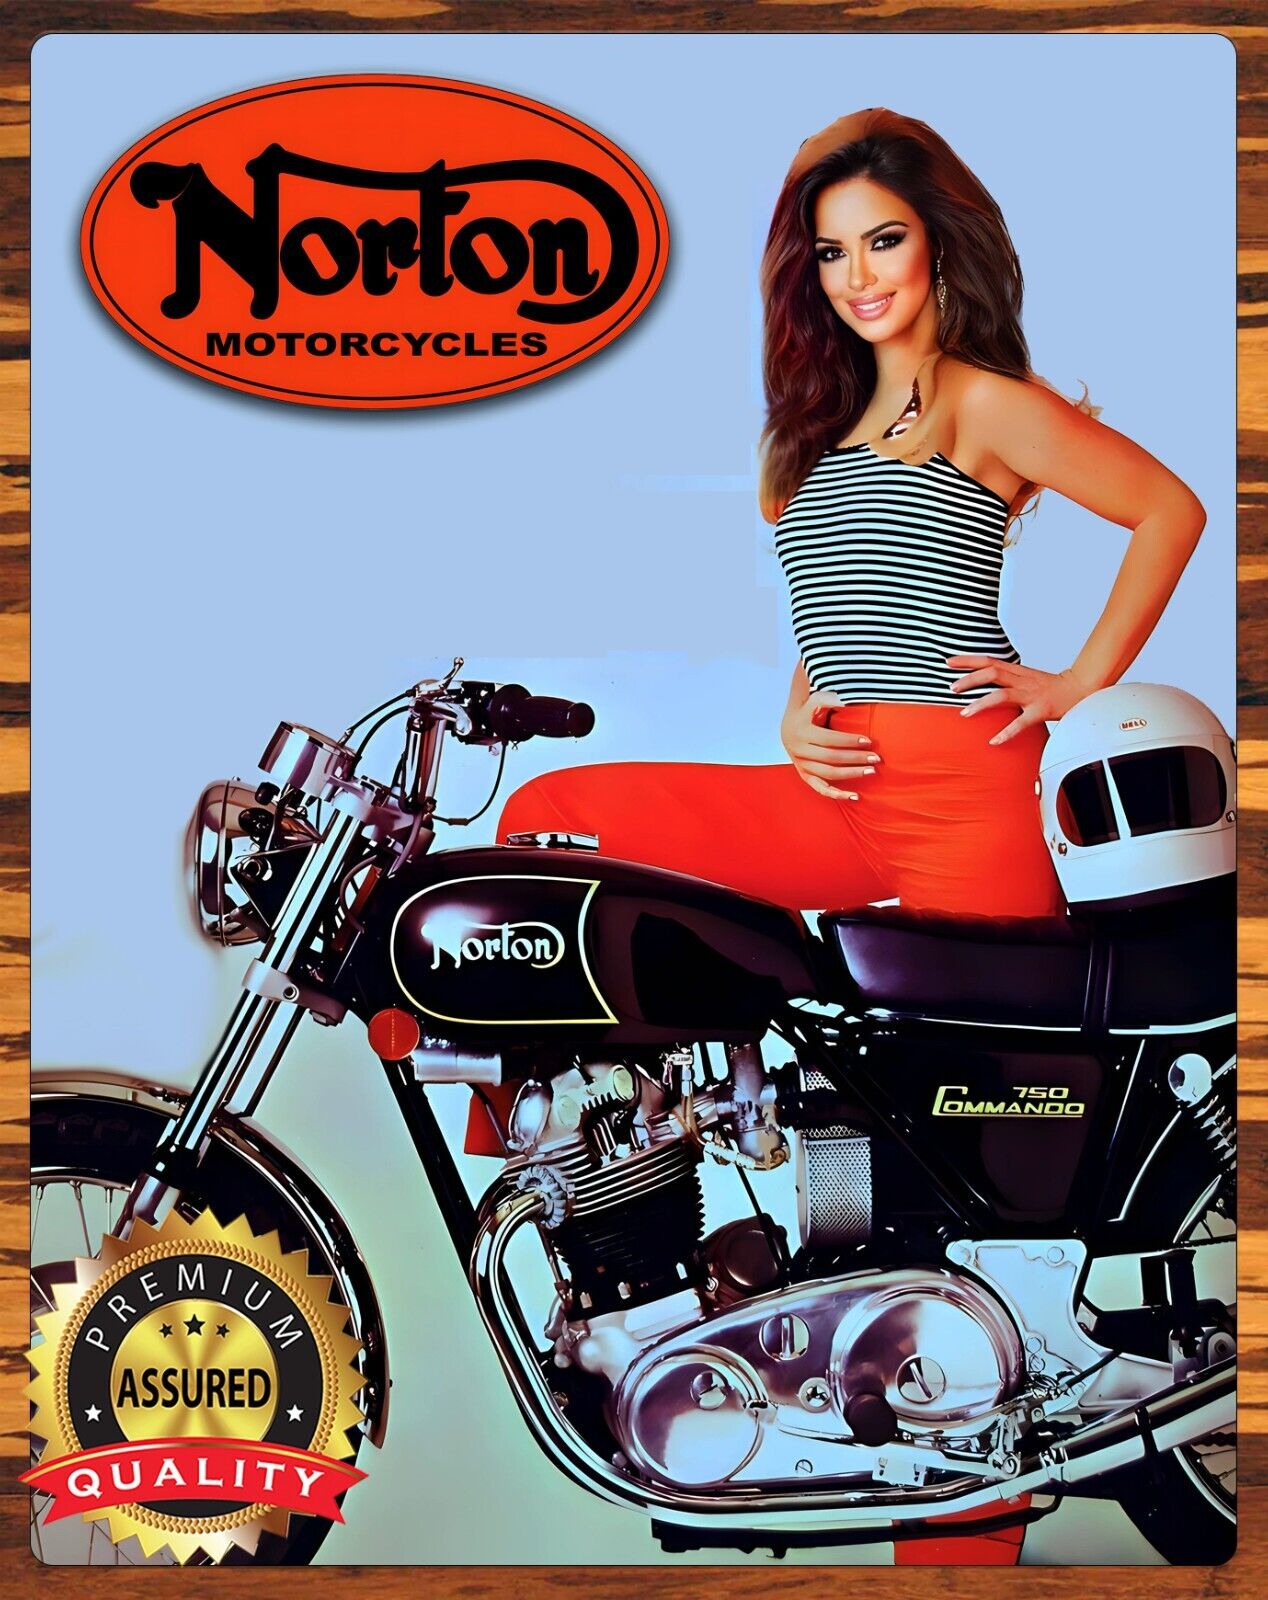 1972 Norton Motorcycle - 750 Commando - Restored - Metal Sign 11 x 14